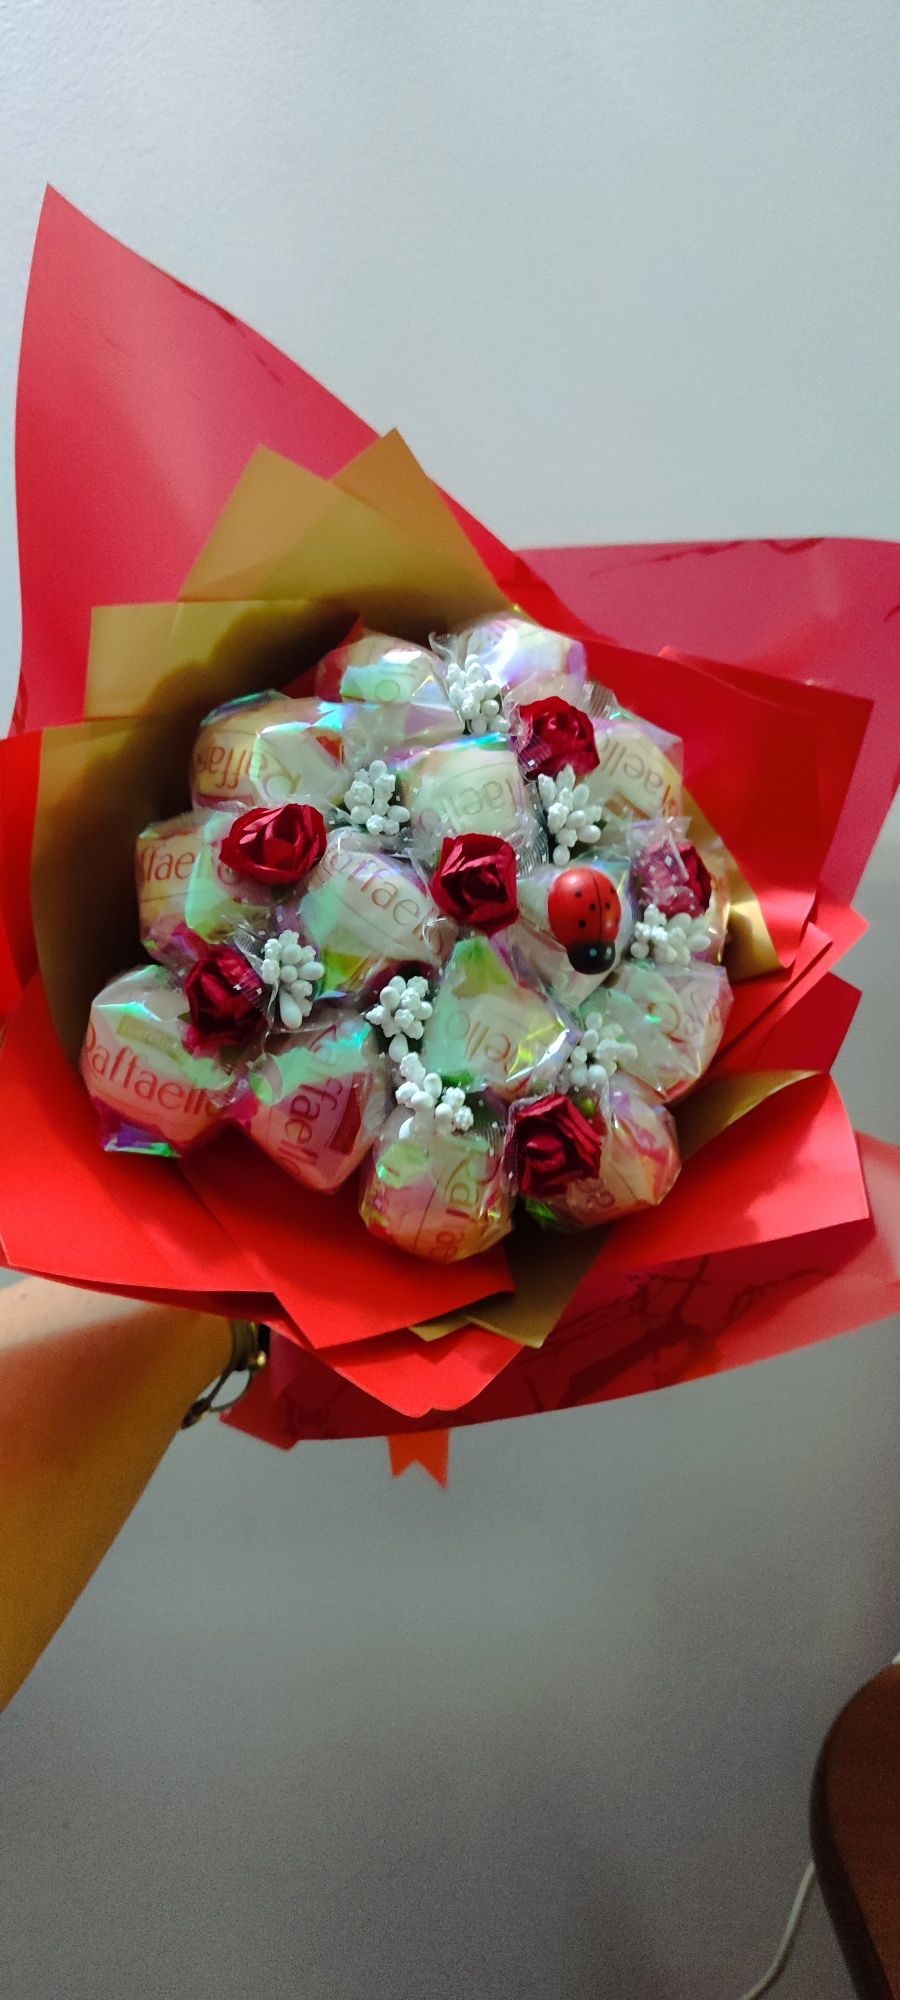 Flower box że słodyczami